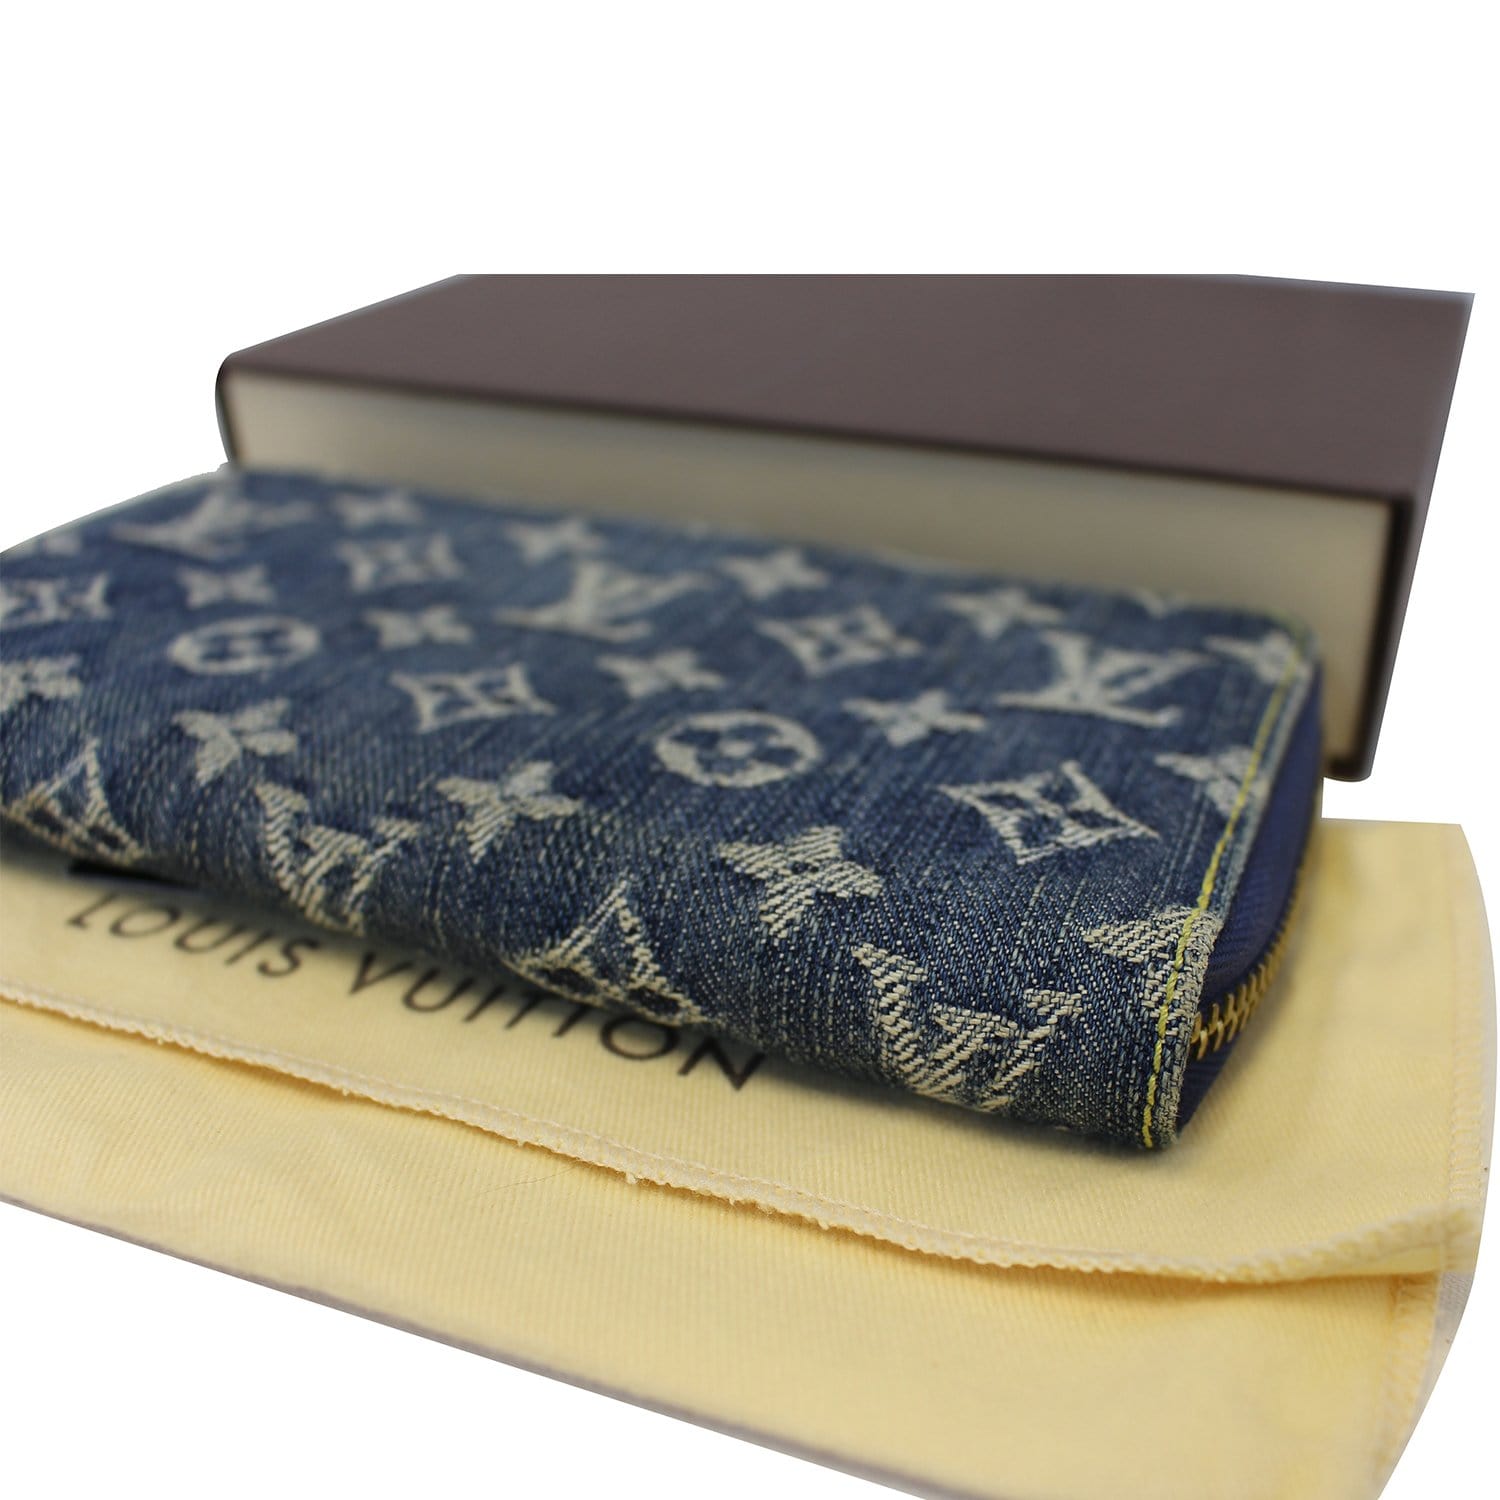 Sold at Auction: Louis Vuitton Monogram Denim Wallet